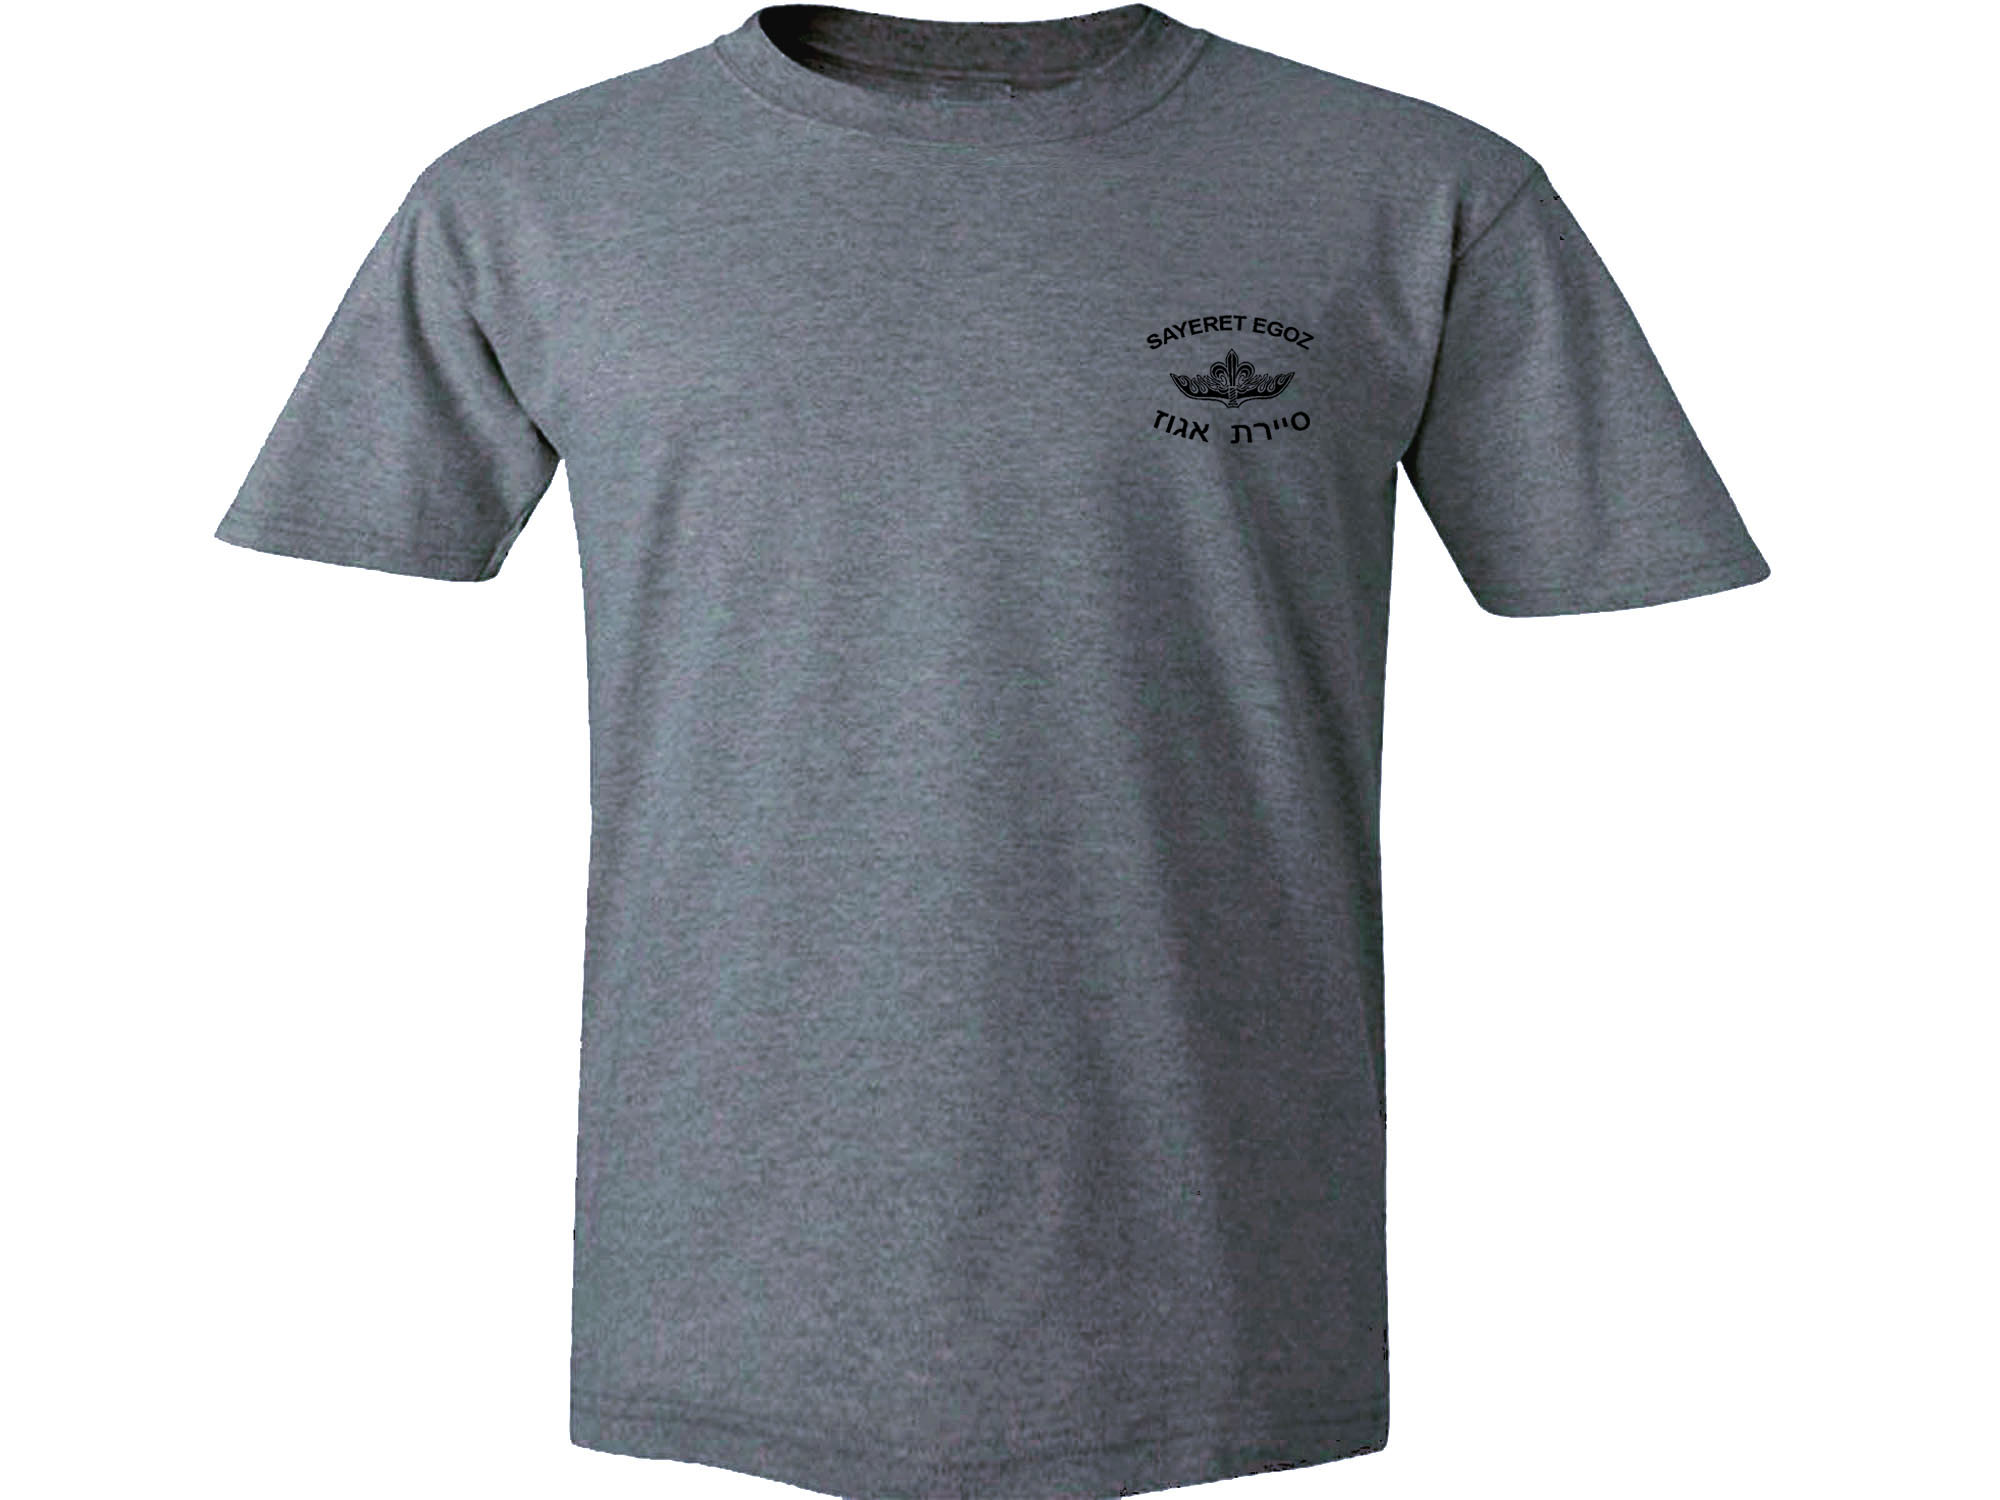 IDF T-Shirt-Israel Army Shirts - Israel1Shop.ru - Widest Israel Shop